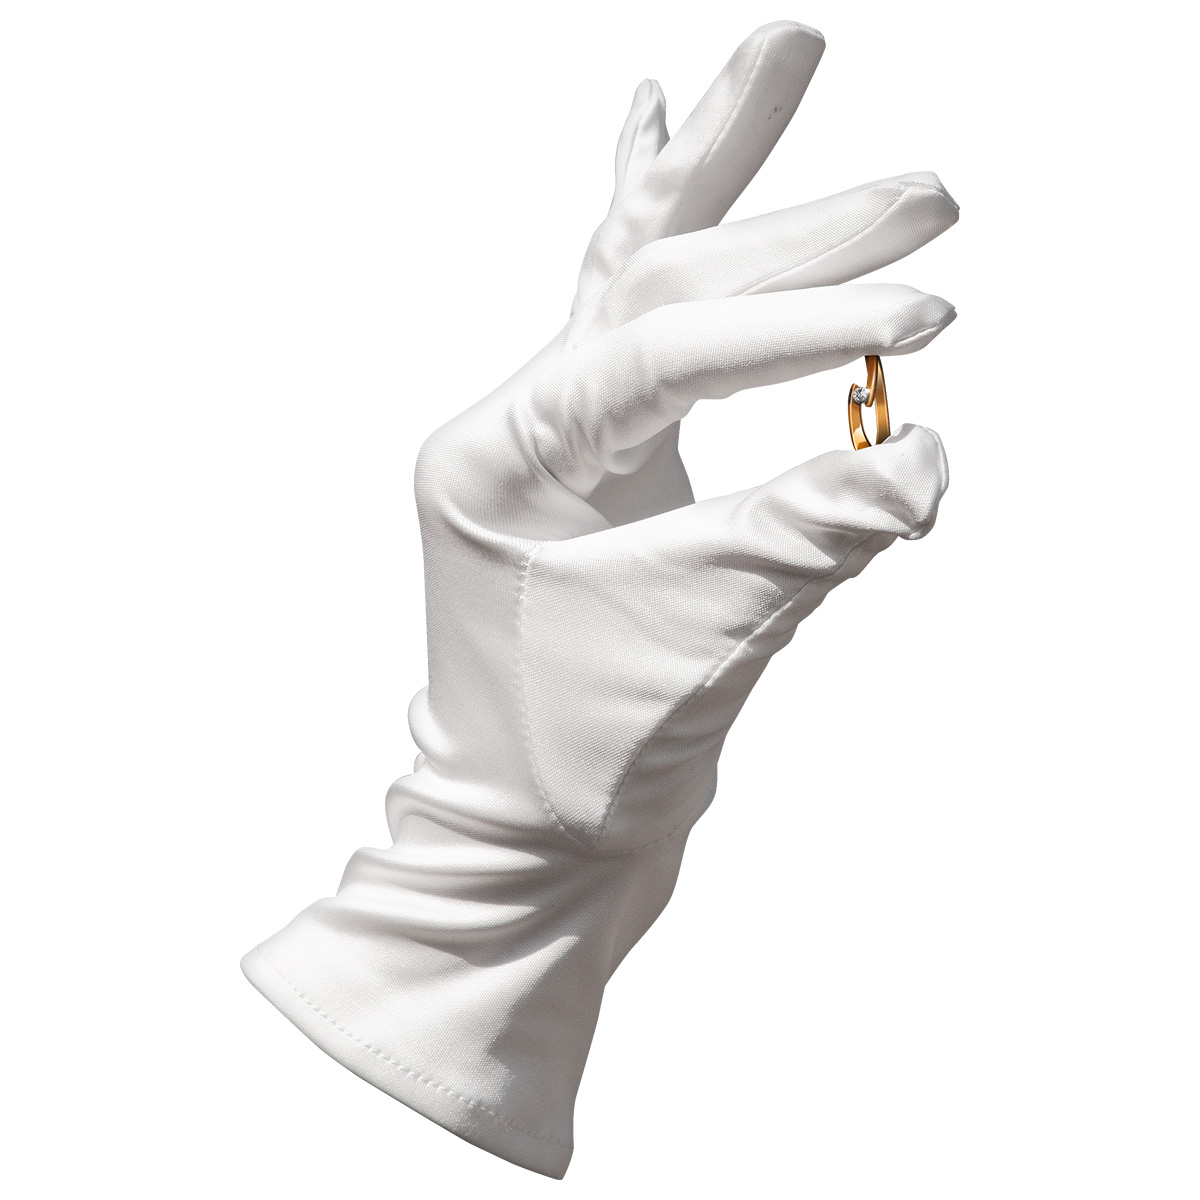 Mikrofaser Handschuh-Paar Haute Couture, weiß, Größe XL
